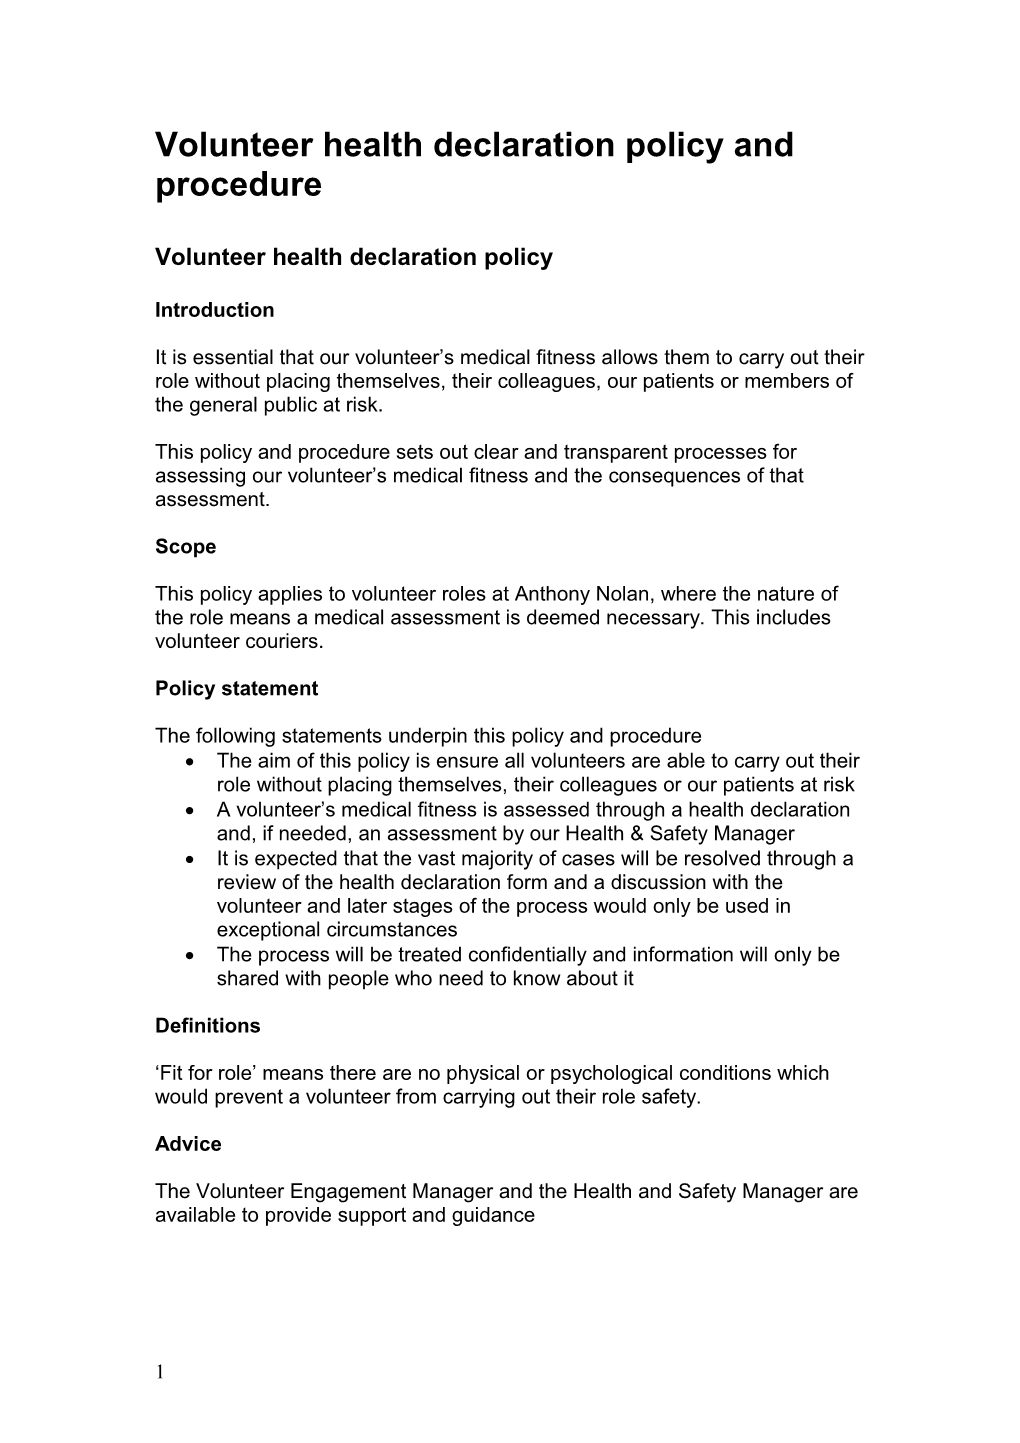 Volunteer Health Declarationpolicy and Procedure